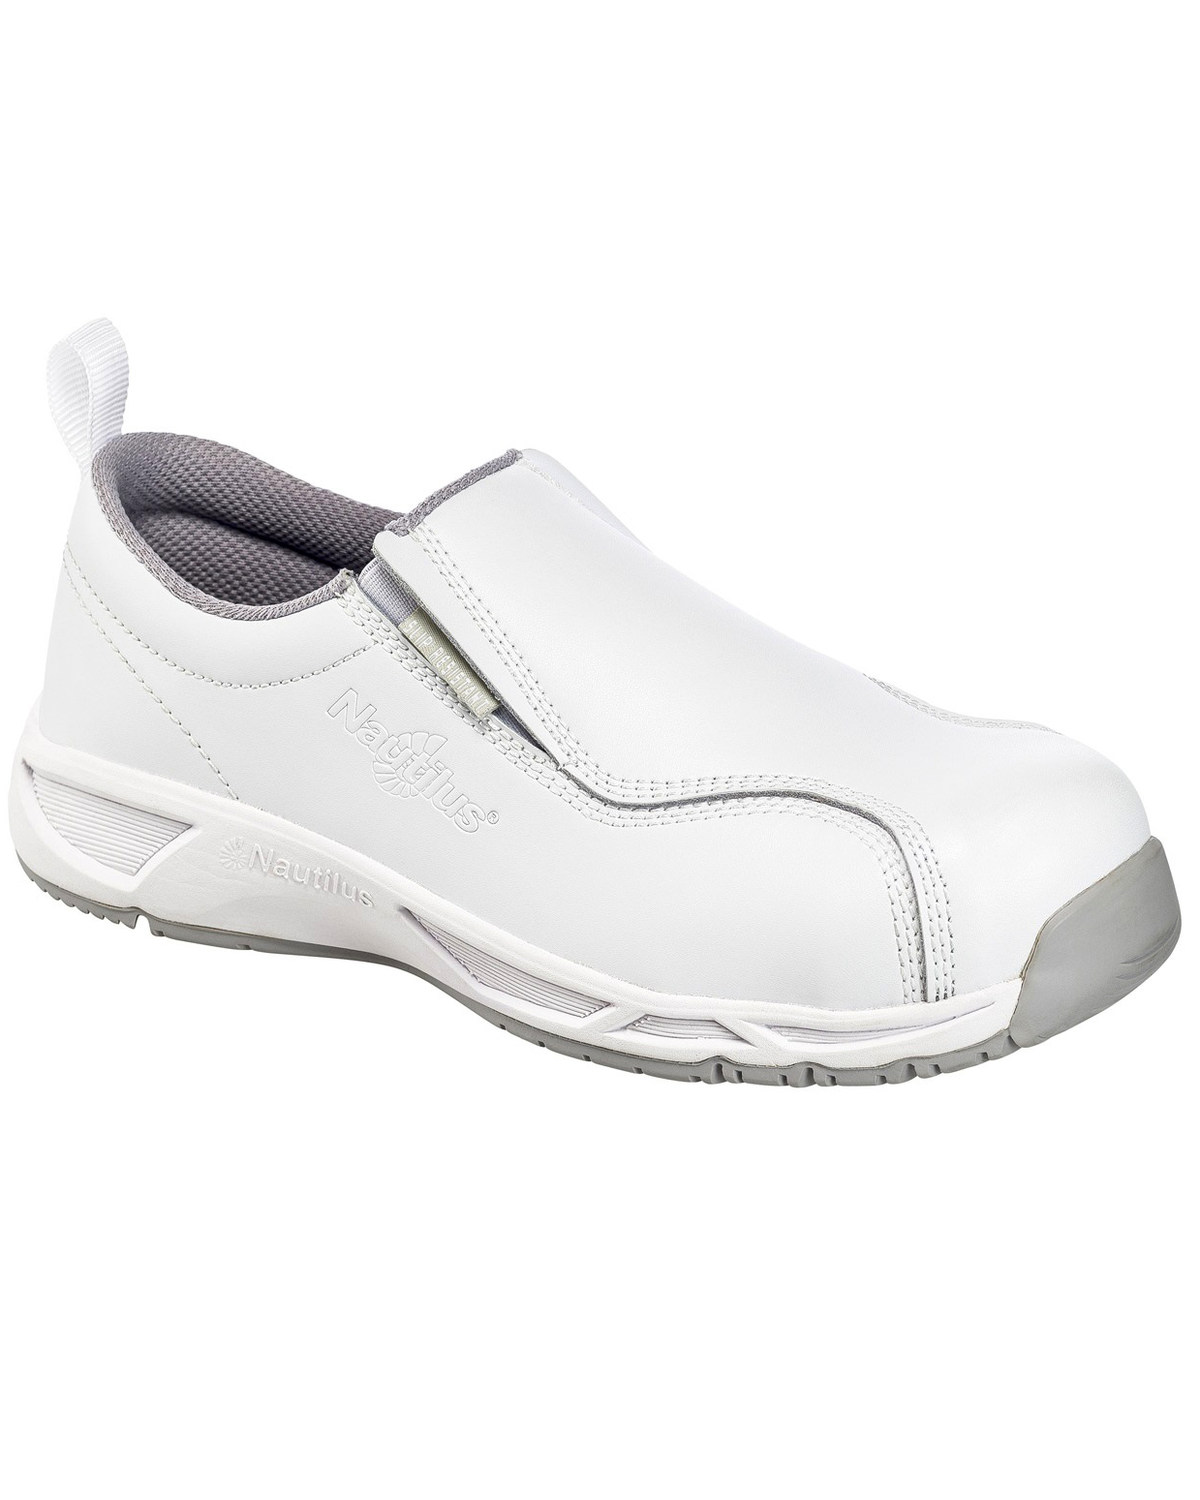 Nautilus Men's Slip-Resisting Athletic Work Shoes - Composite Toe